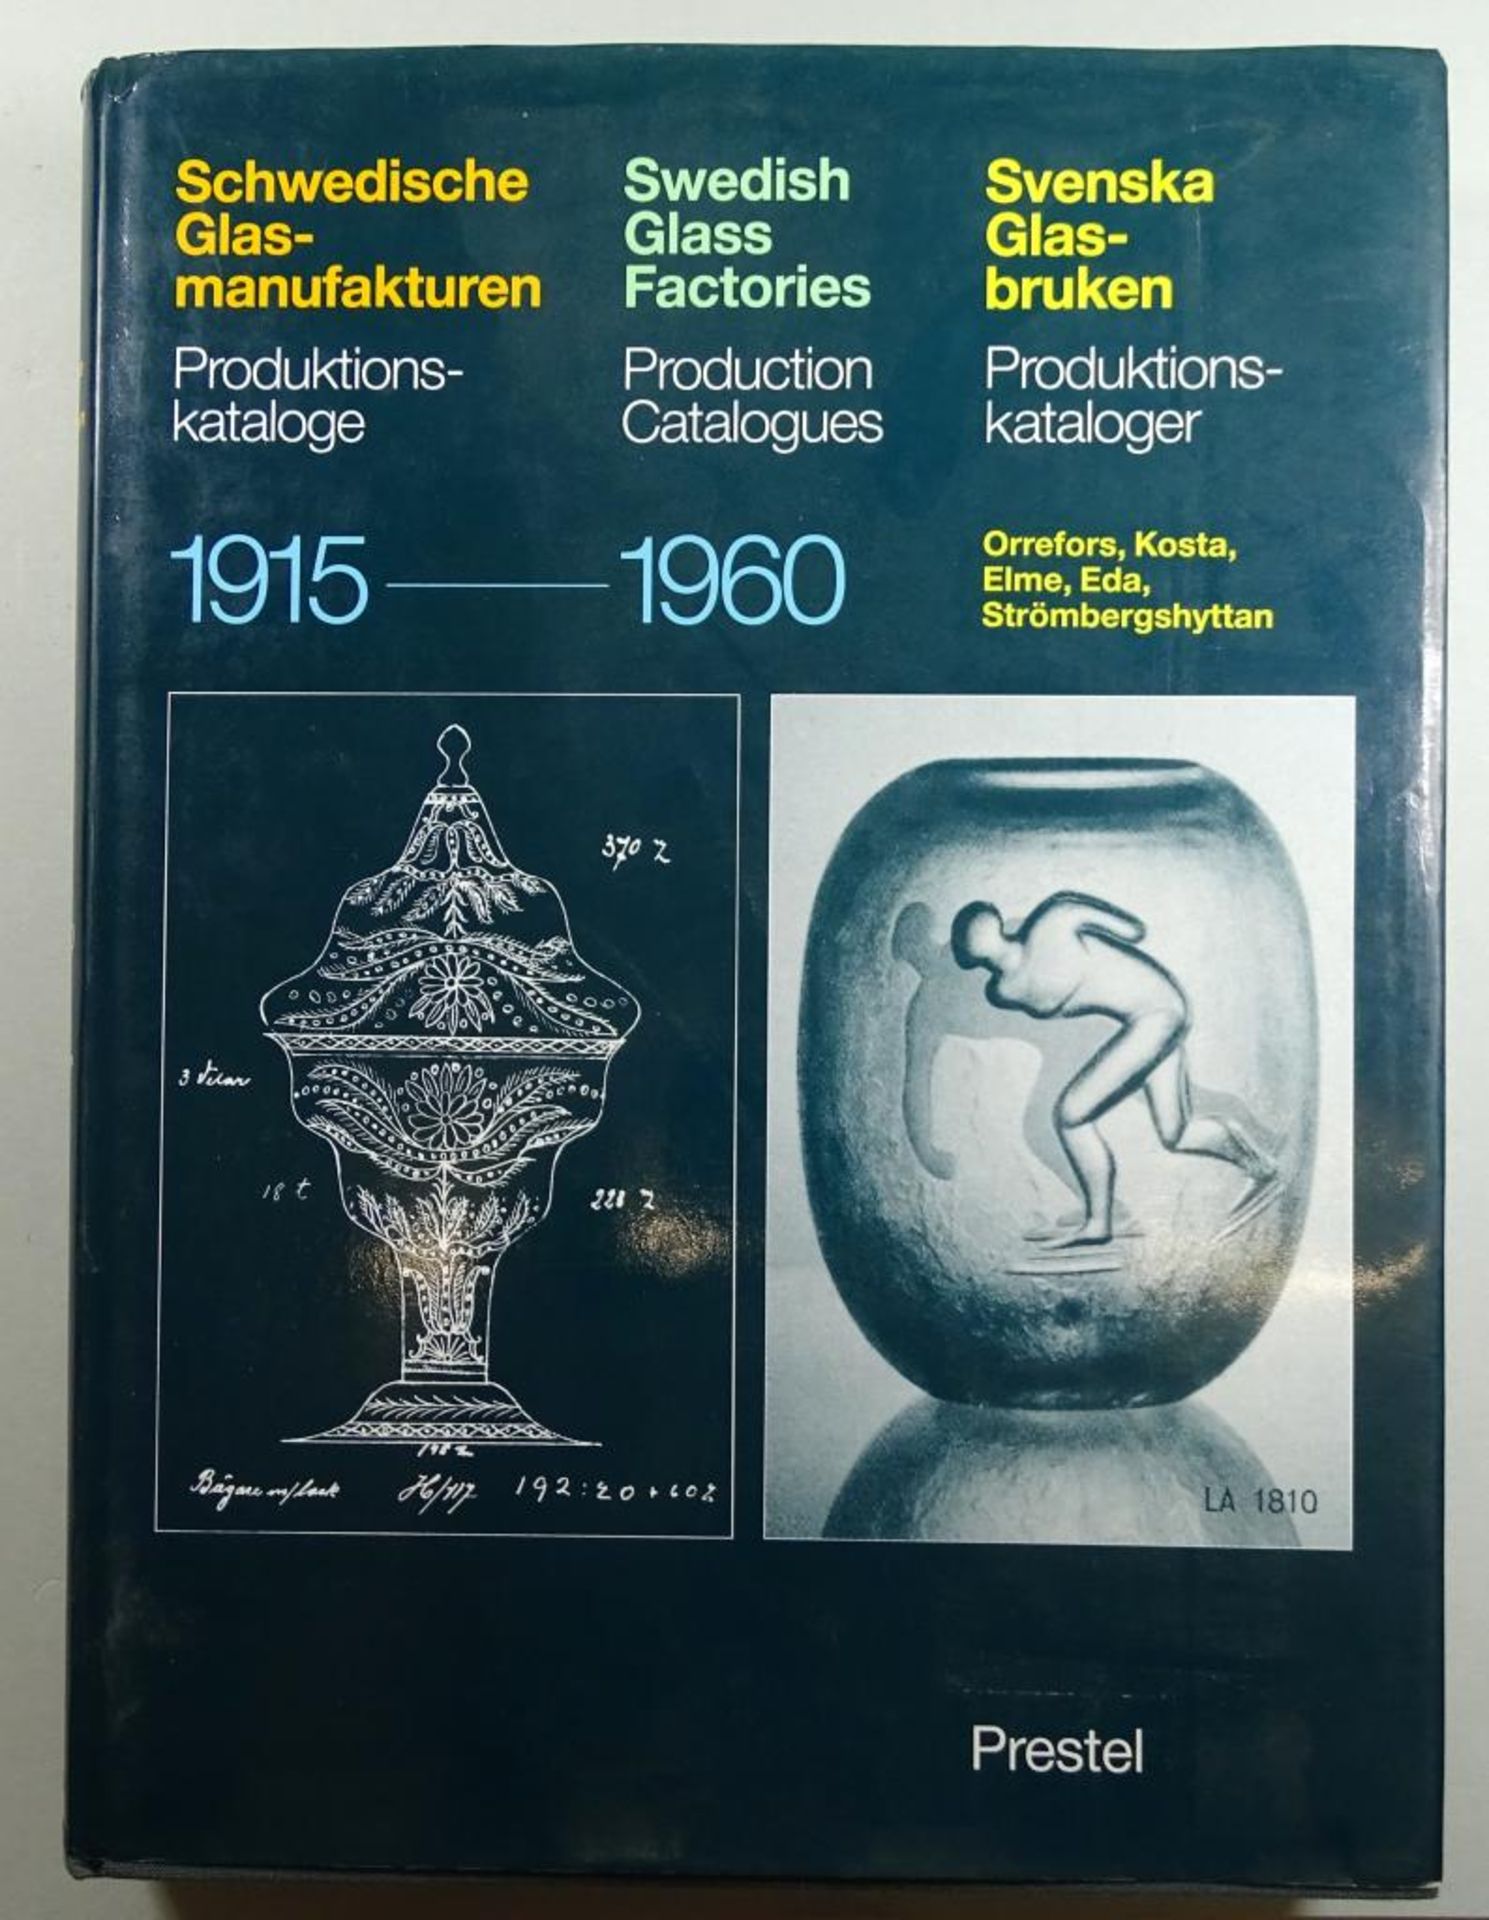 "Schwedische Glasmanufakturen", Produktionskataloge 1915 - 1960